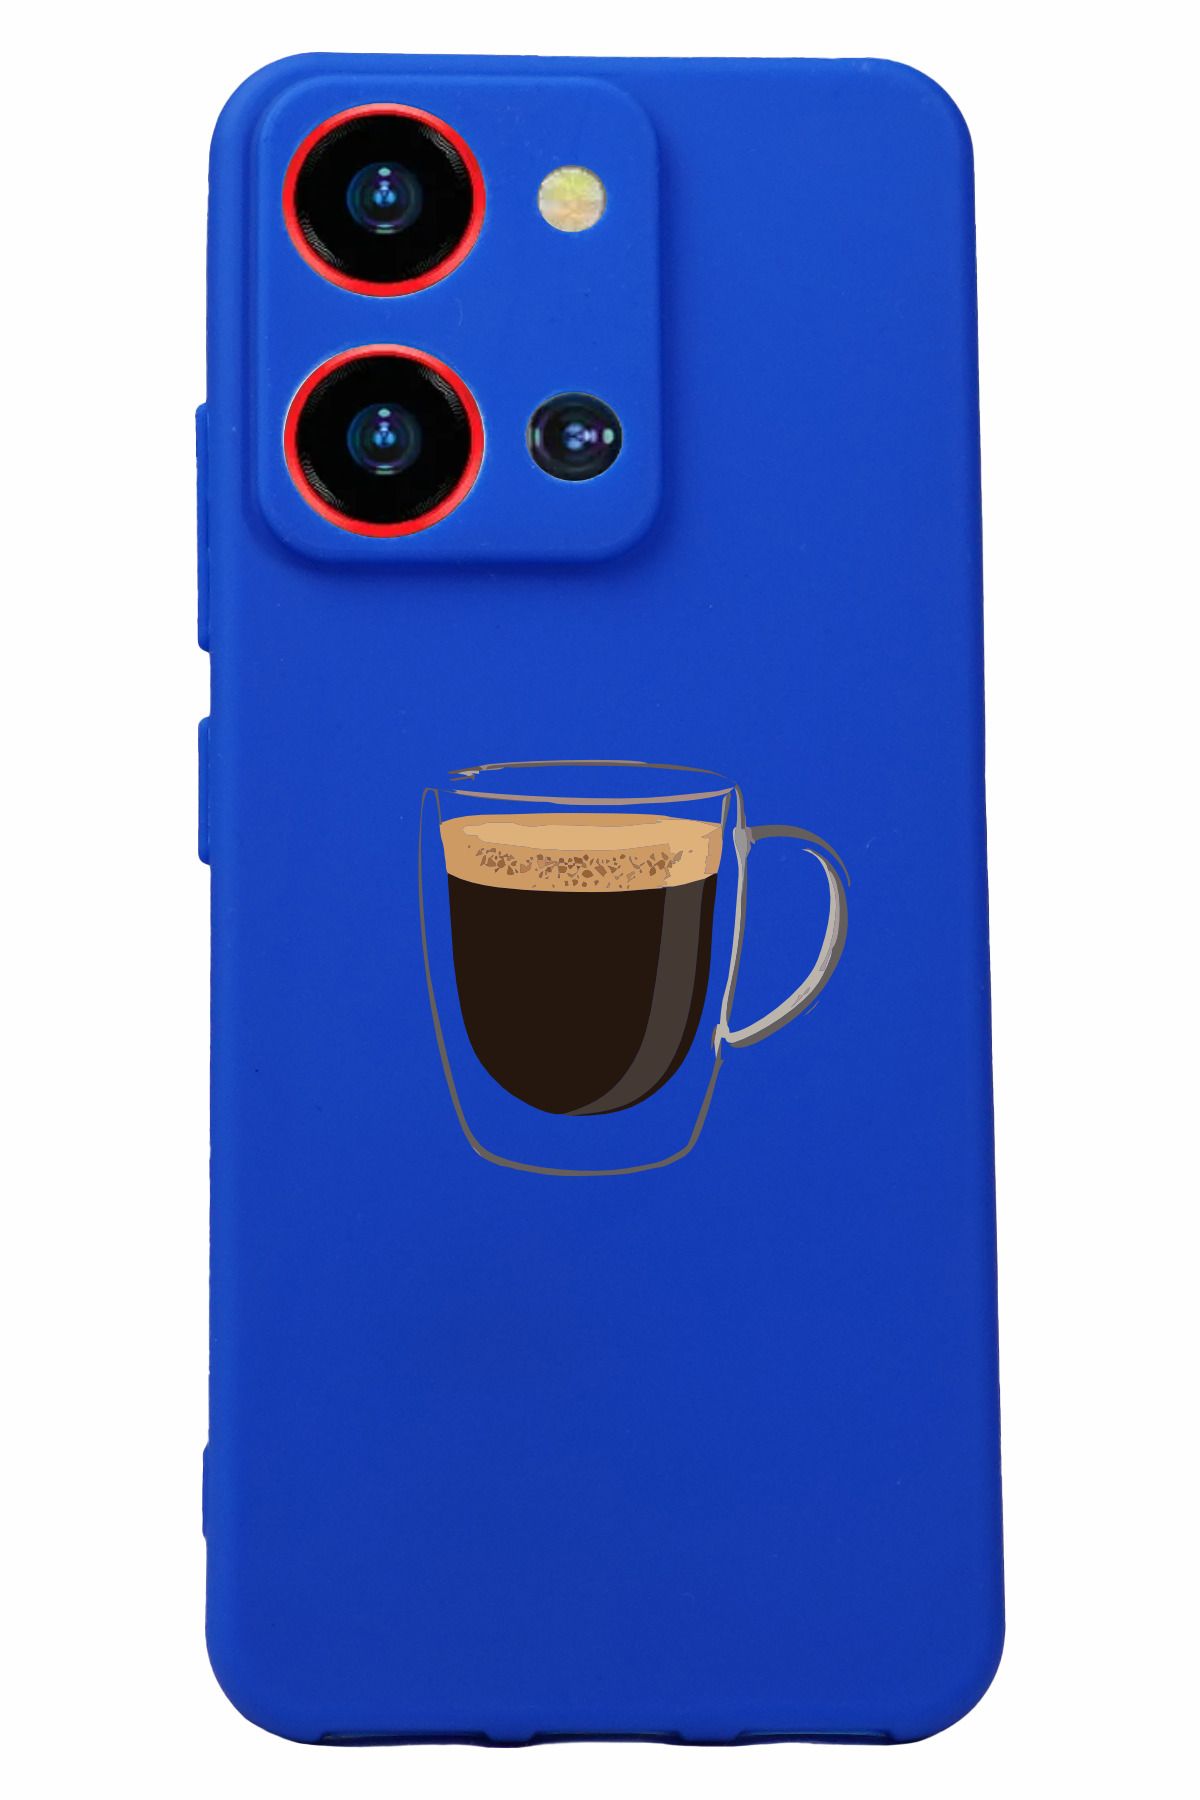 Reeder S19 Max Pro S Zoom Baskılı ve Kamera Korumalı Mavi Renk Silikon Kılıf